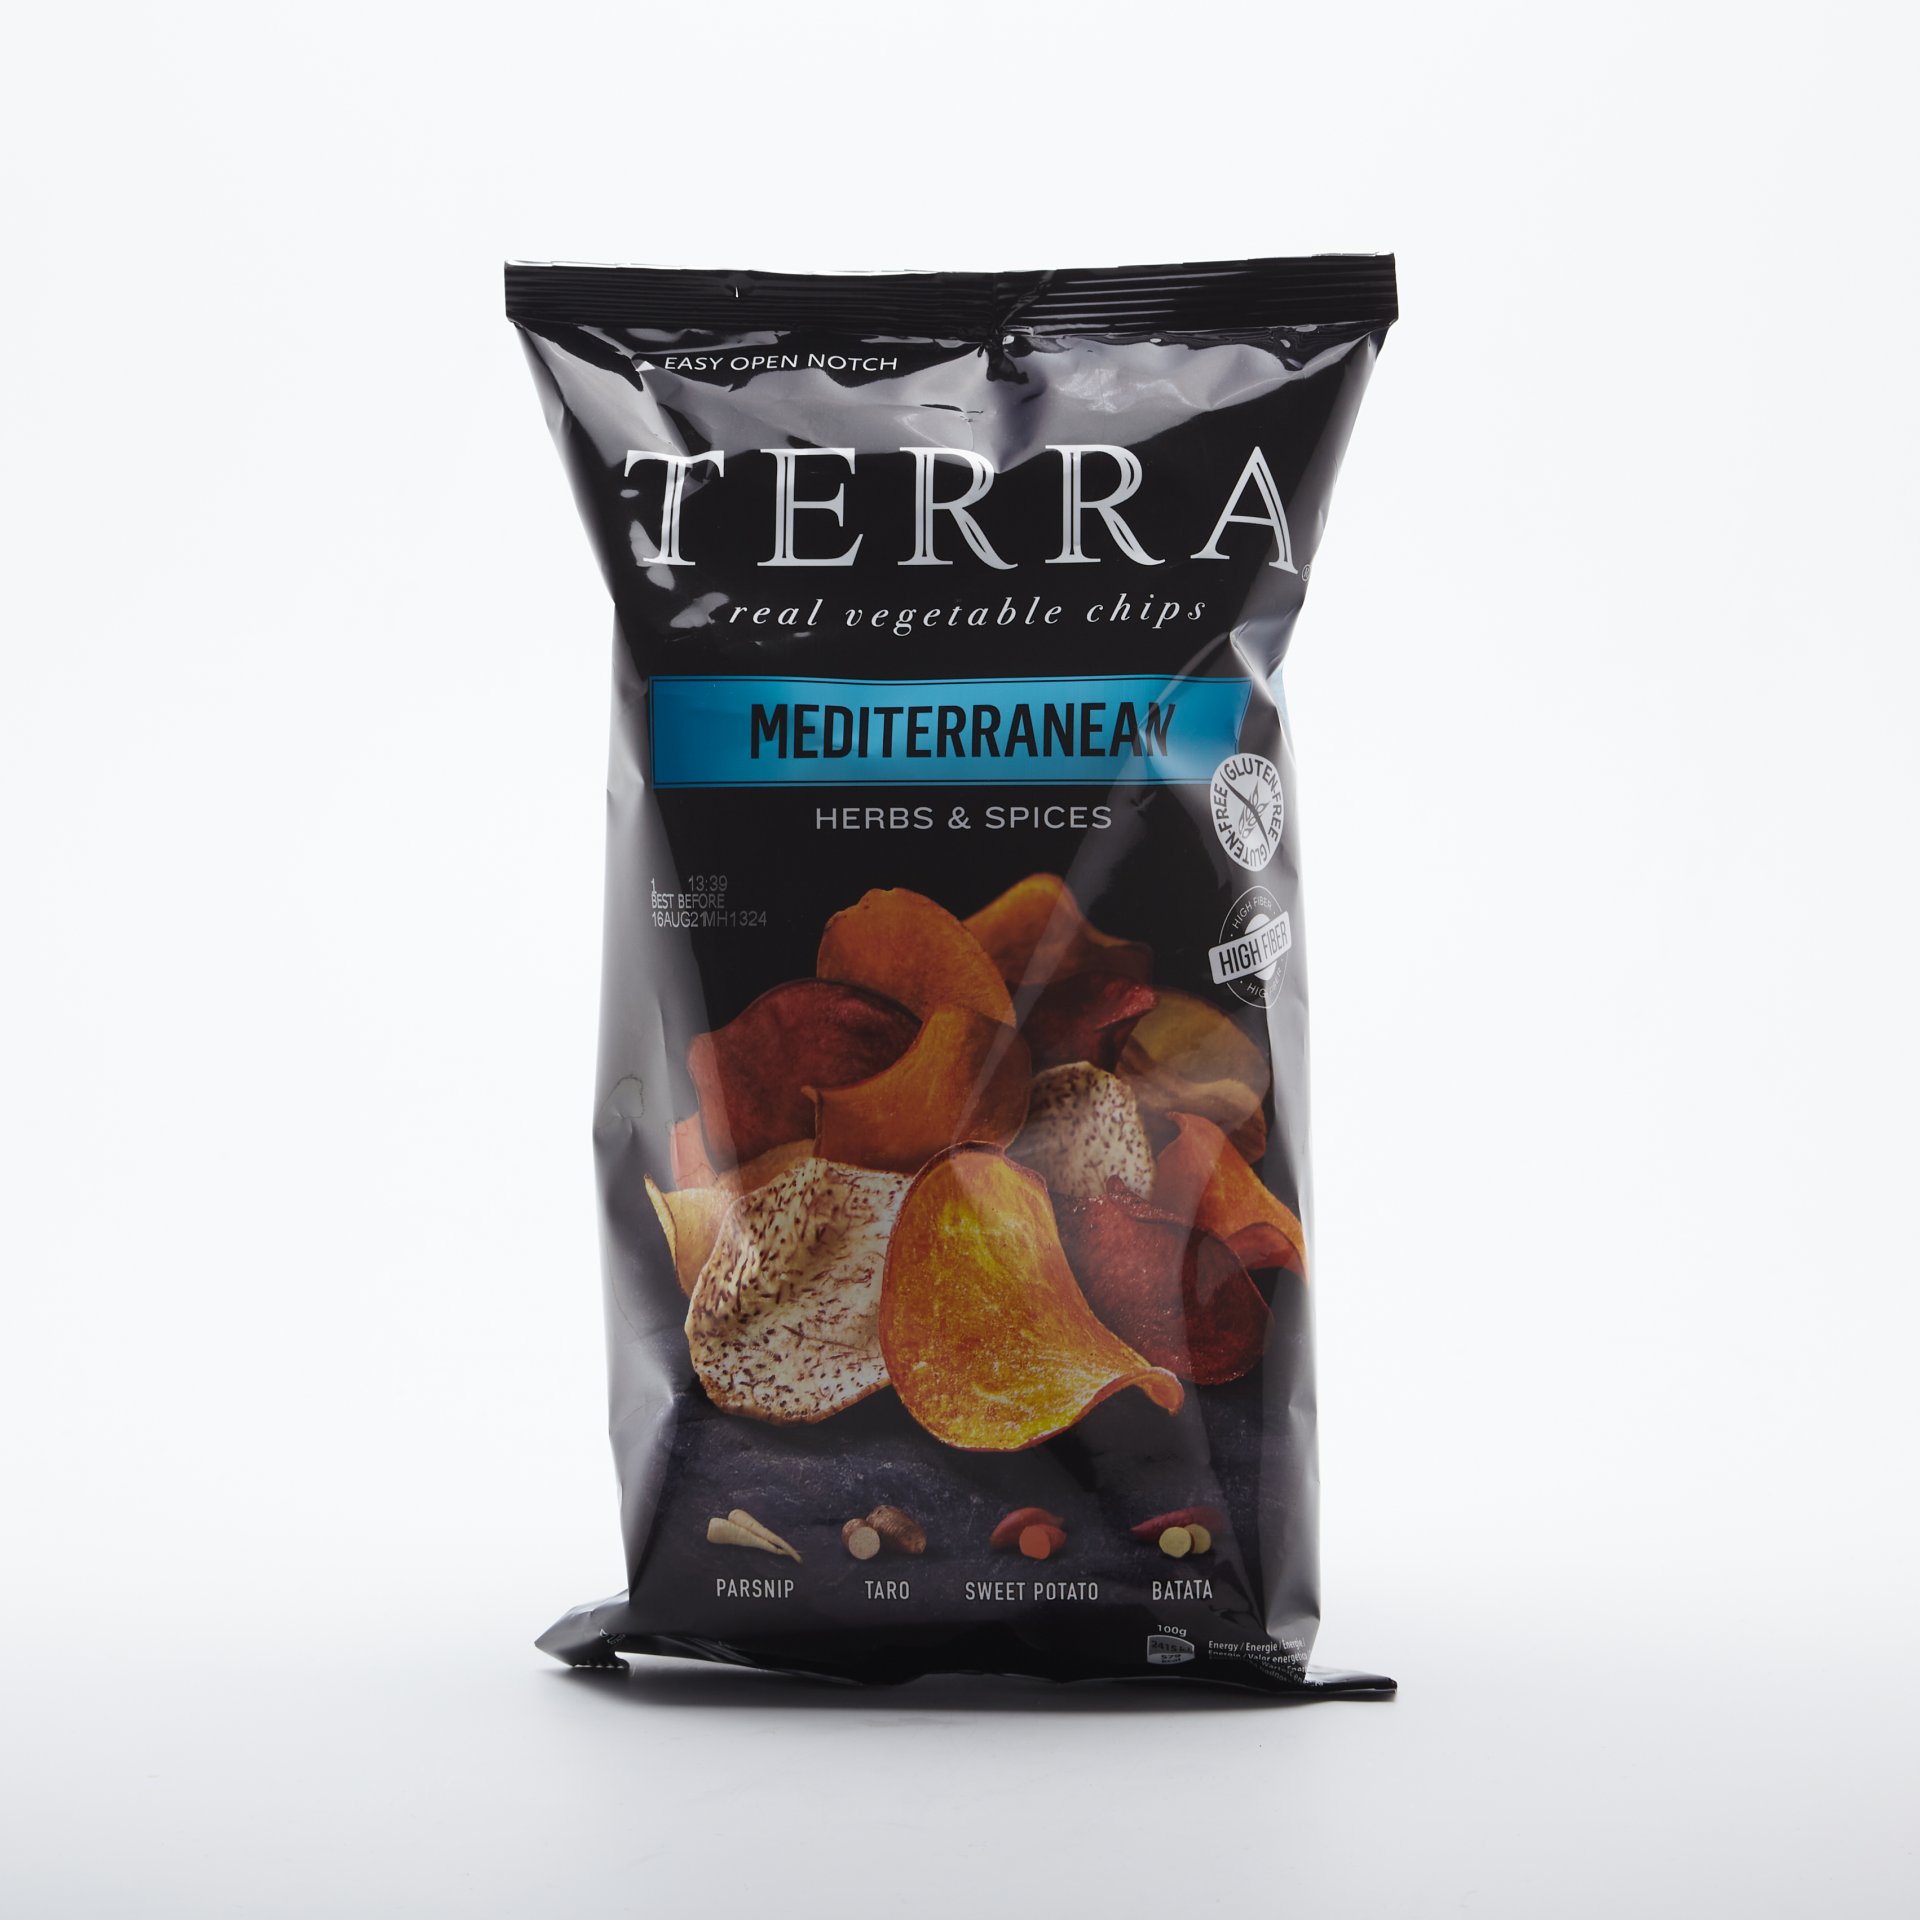 TERRA chips Mediterranean 110g